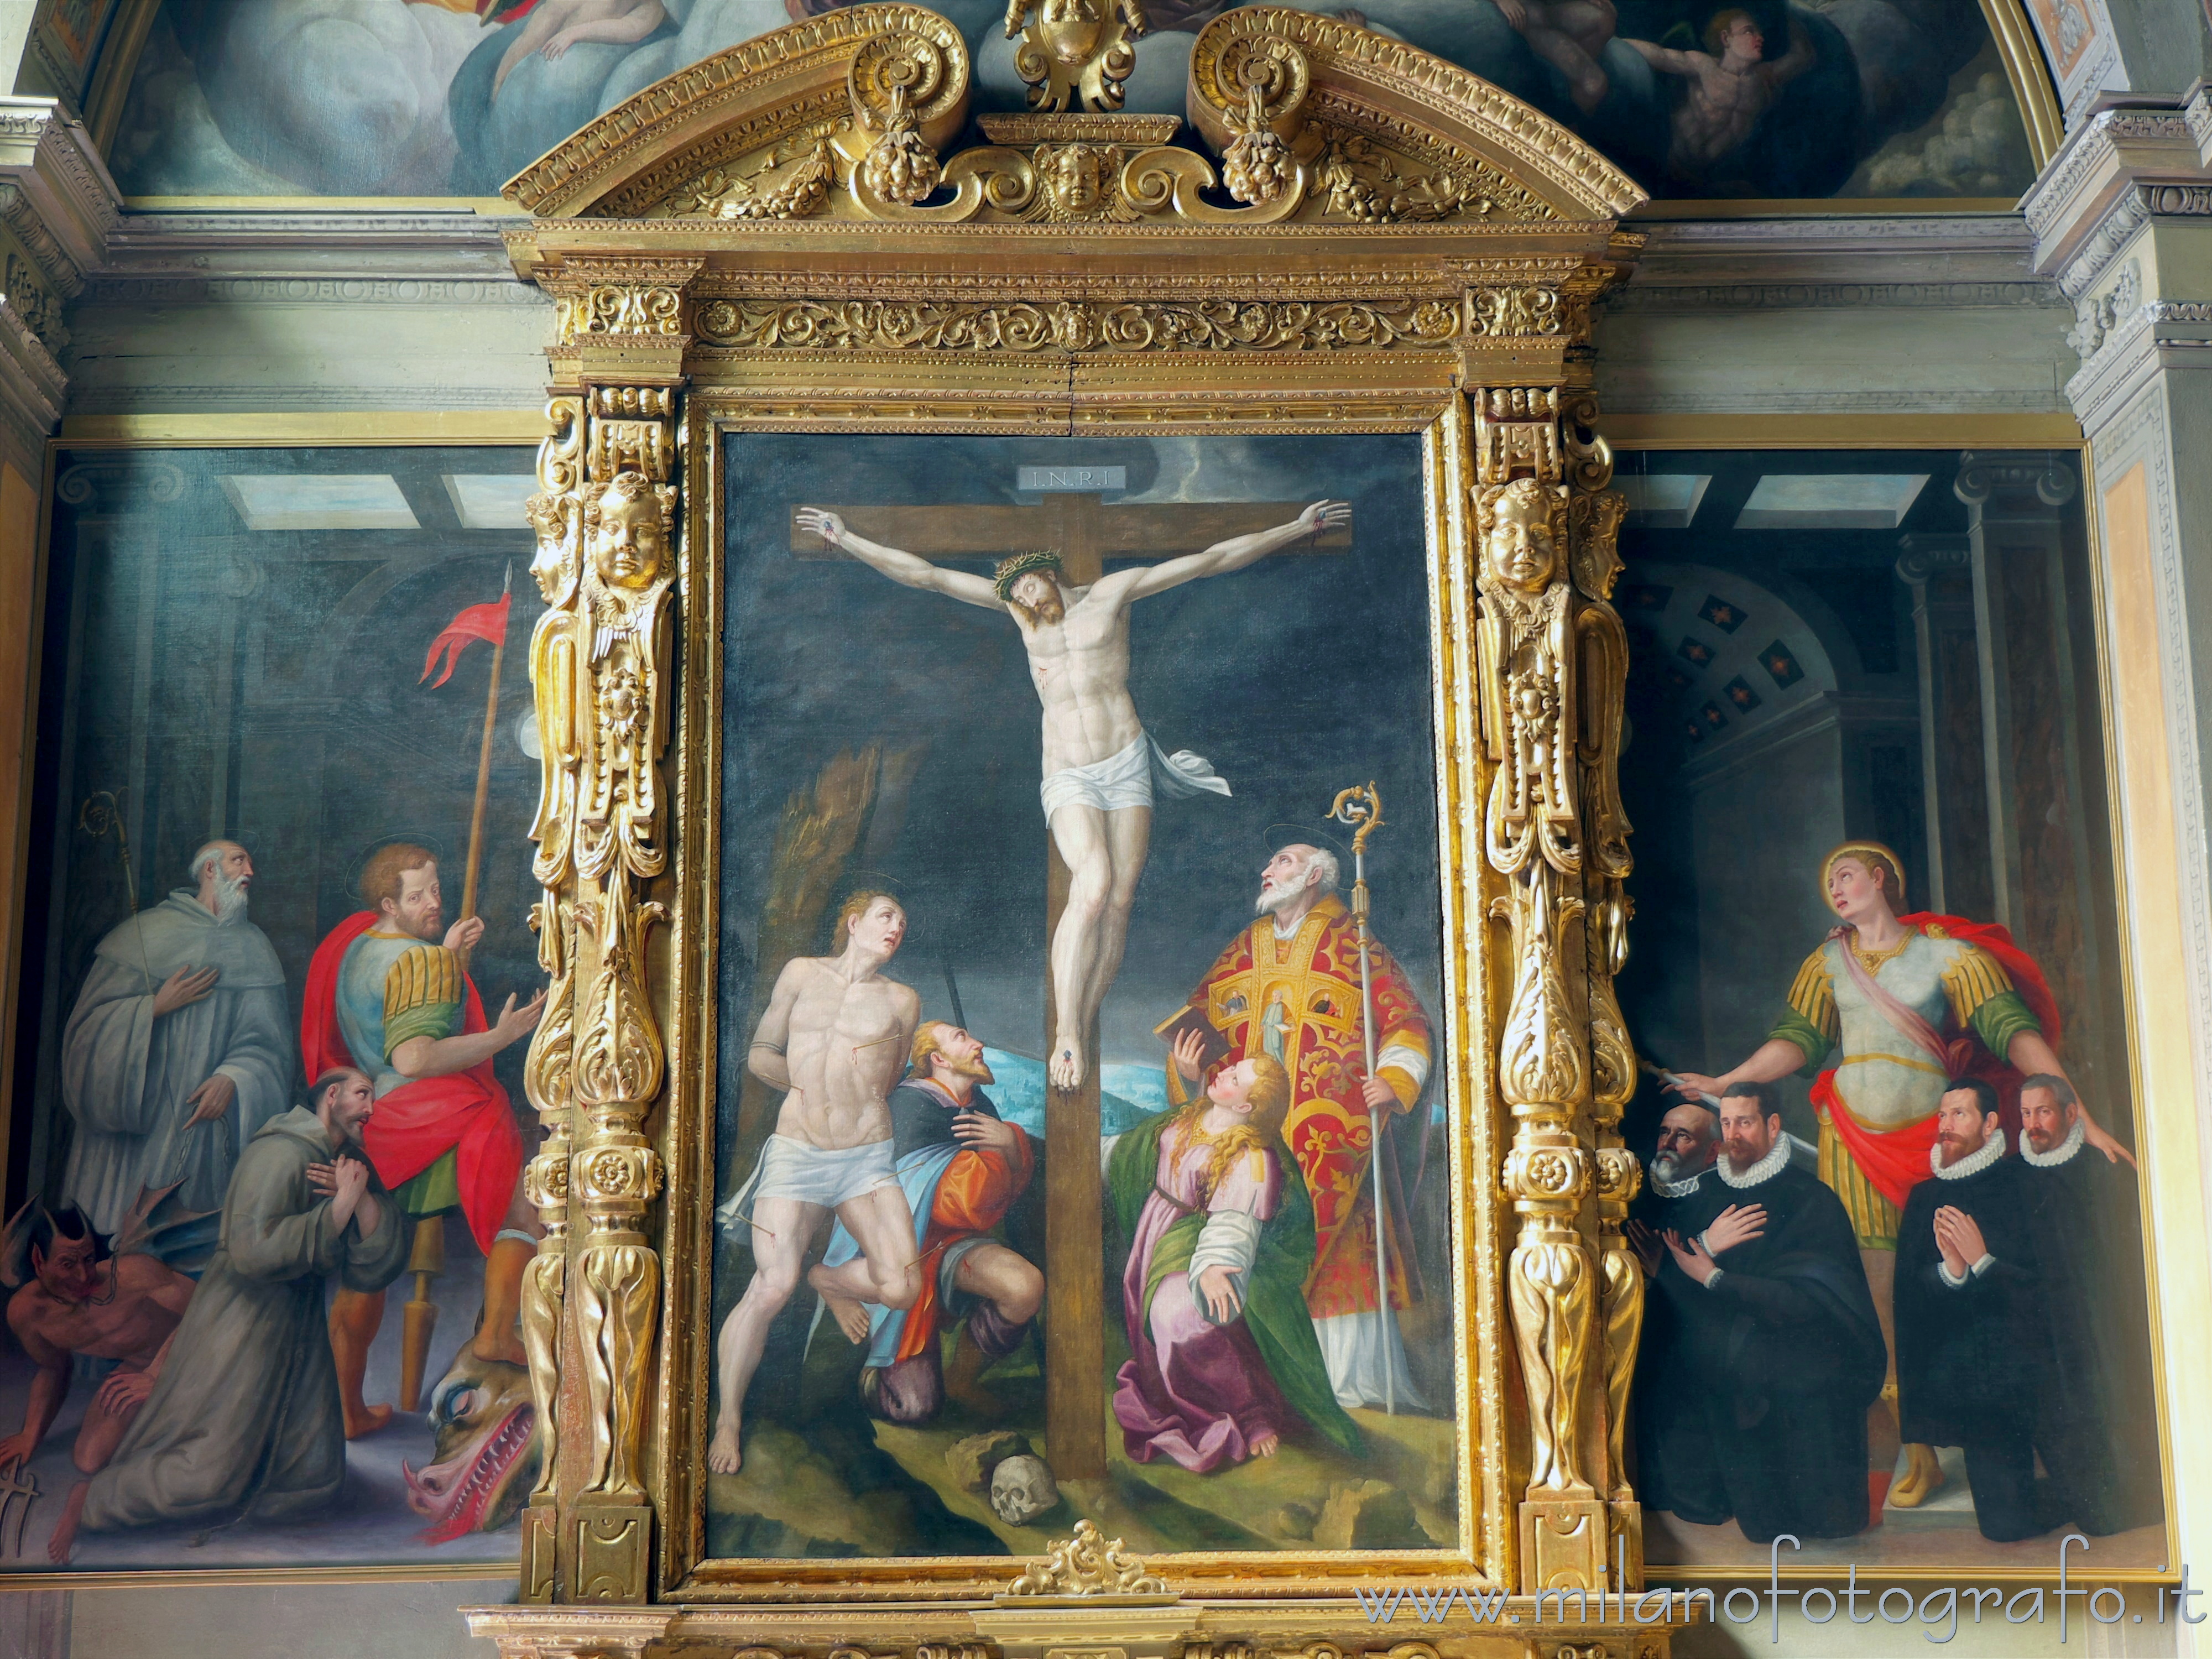 Romano di Lombardia (Bergamo, Italy): Crucifixion of Aurelio Gatti in the Basilica of San Defendente - Romano di Lombardia (Bergamo, Italy)